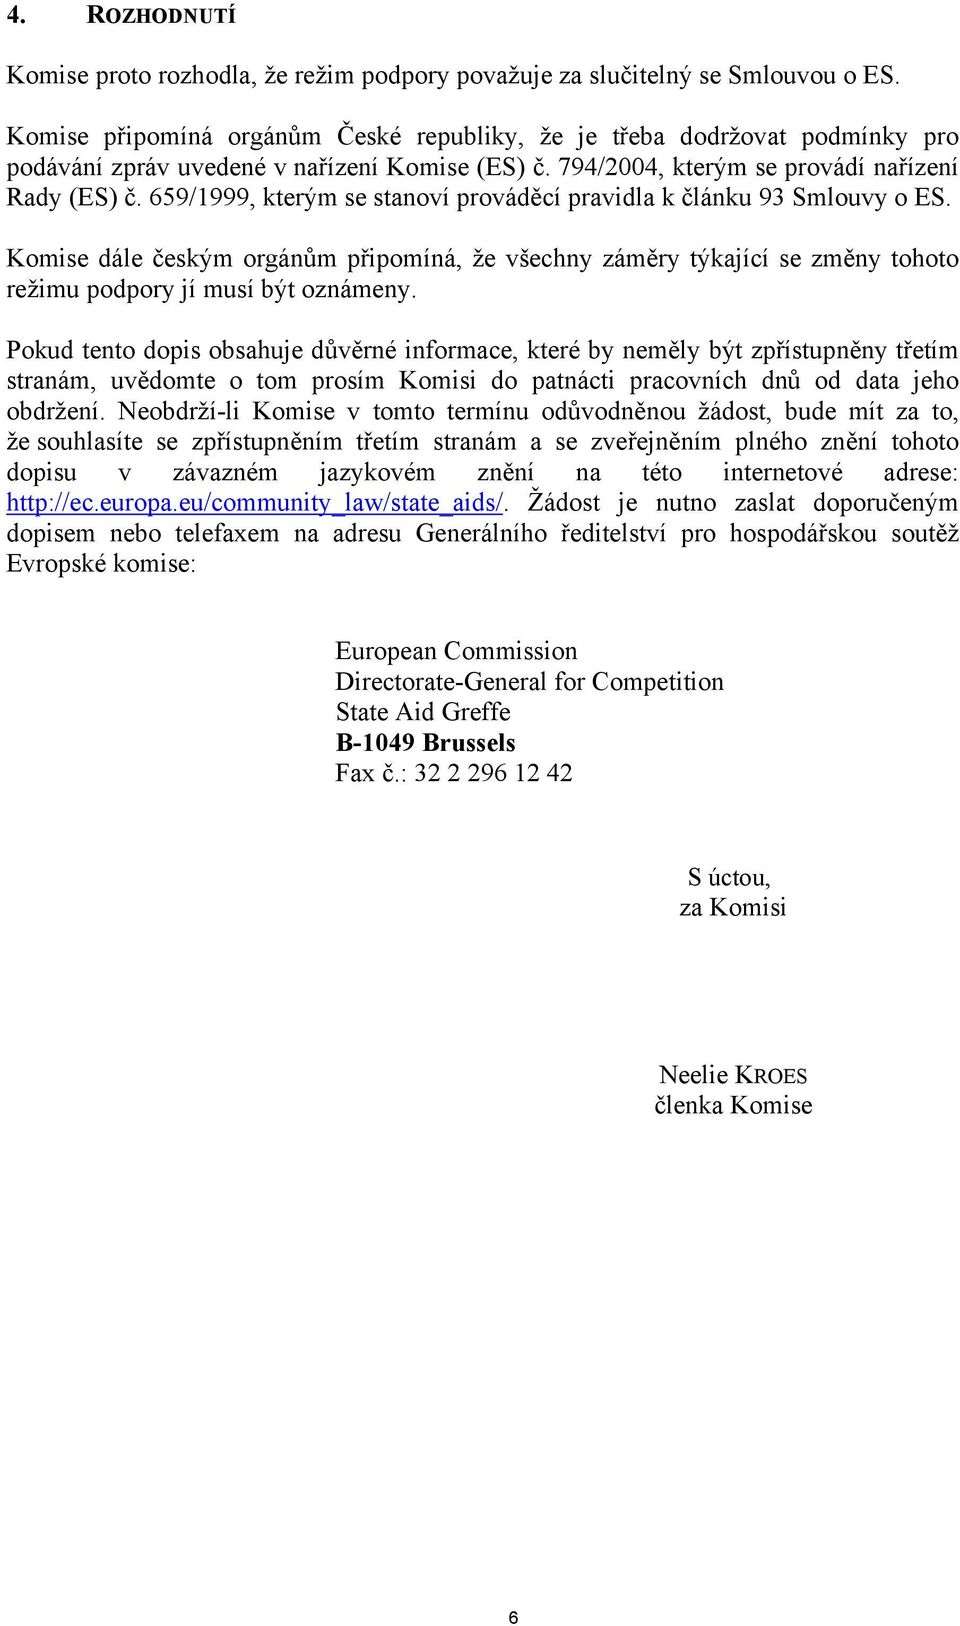 659/1999, kterým se stanoví prováděcí pravidla k článku 93 Smlouvy o ES. Komise dále českým orgánům připomíná, že všechny záměry týkající se změny tohoto režimu podpory jí musí být oznámeny.